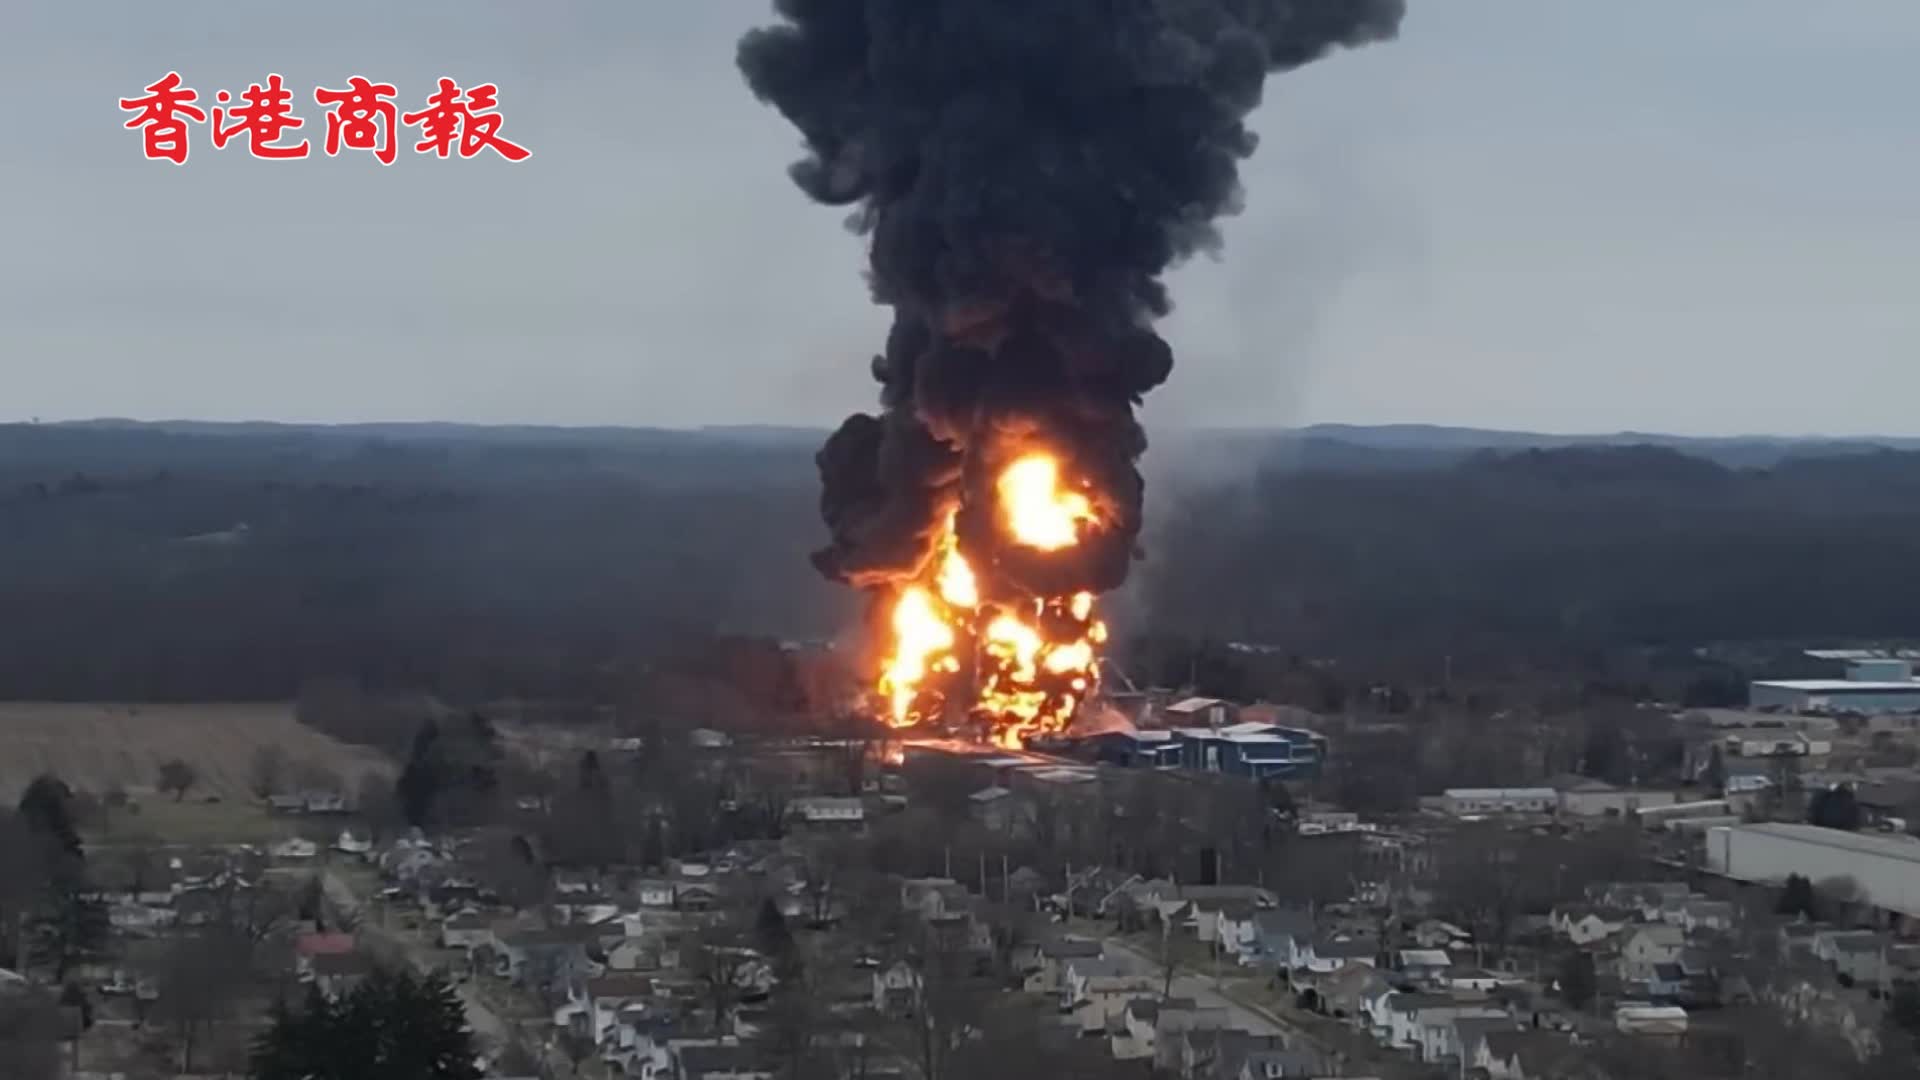 有片 | 毒雲漫天！美國一載有毒化學品火車爆炸 民眾拍下俄亥俄州上空景象